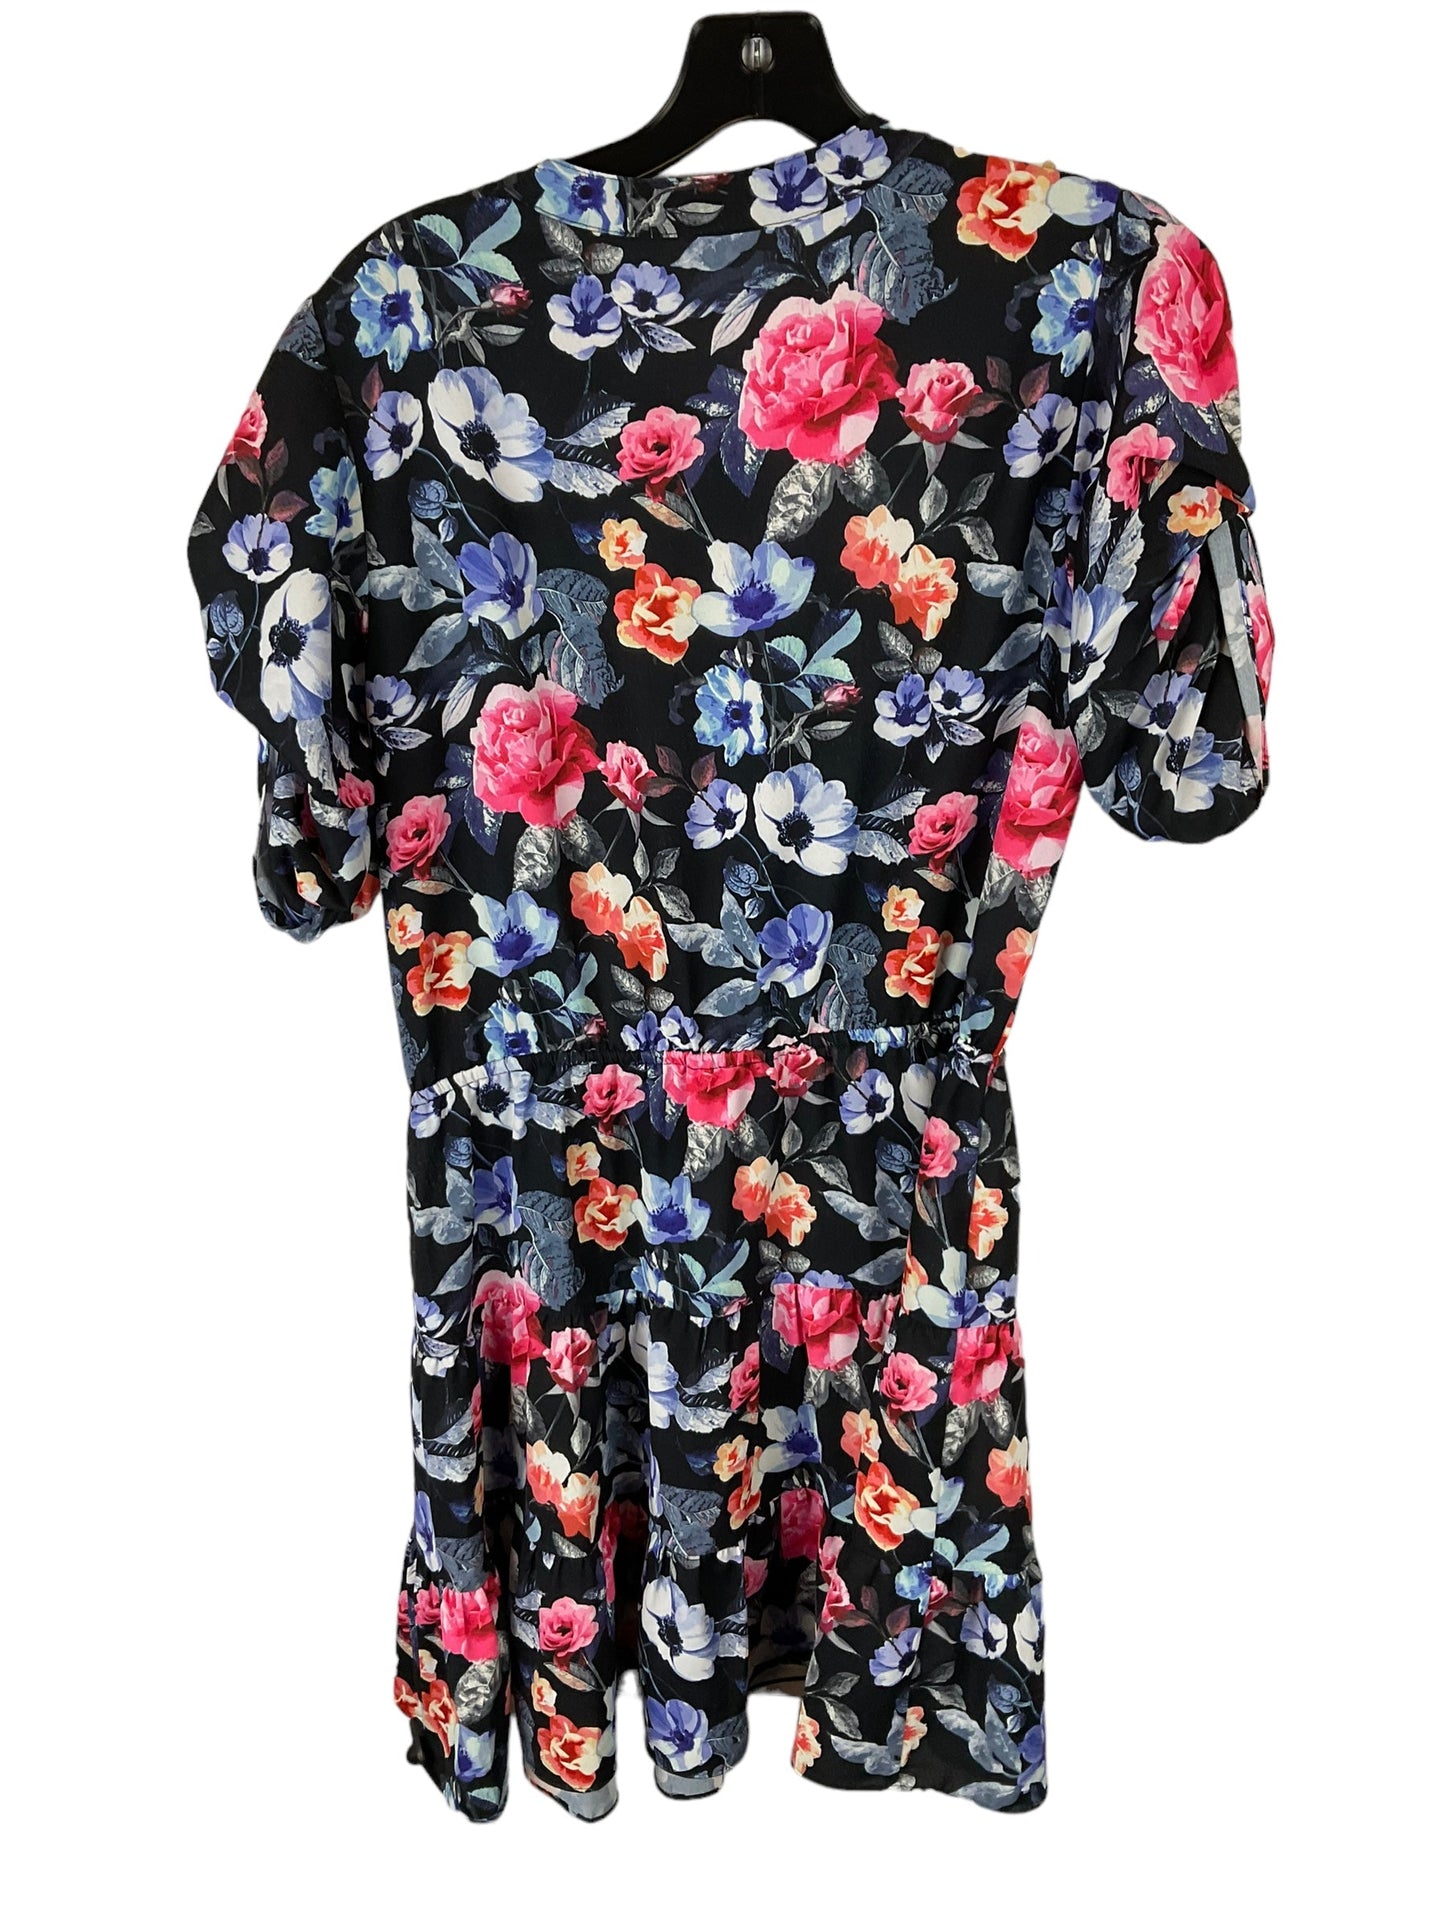 Dress Casual Midi By Rebecca Minkoff  Size: S